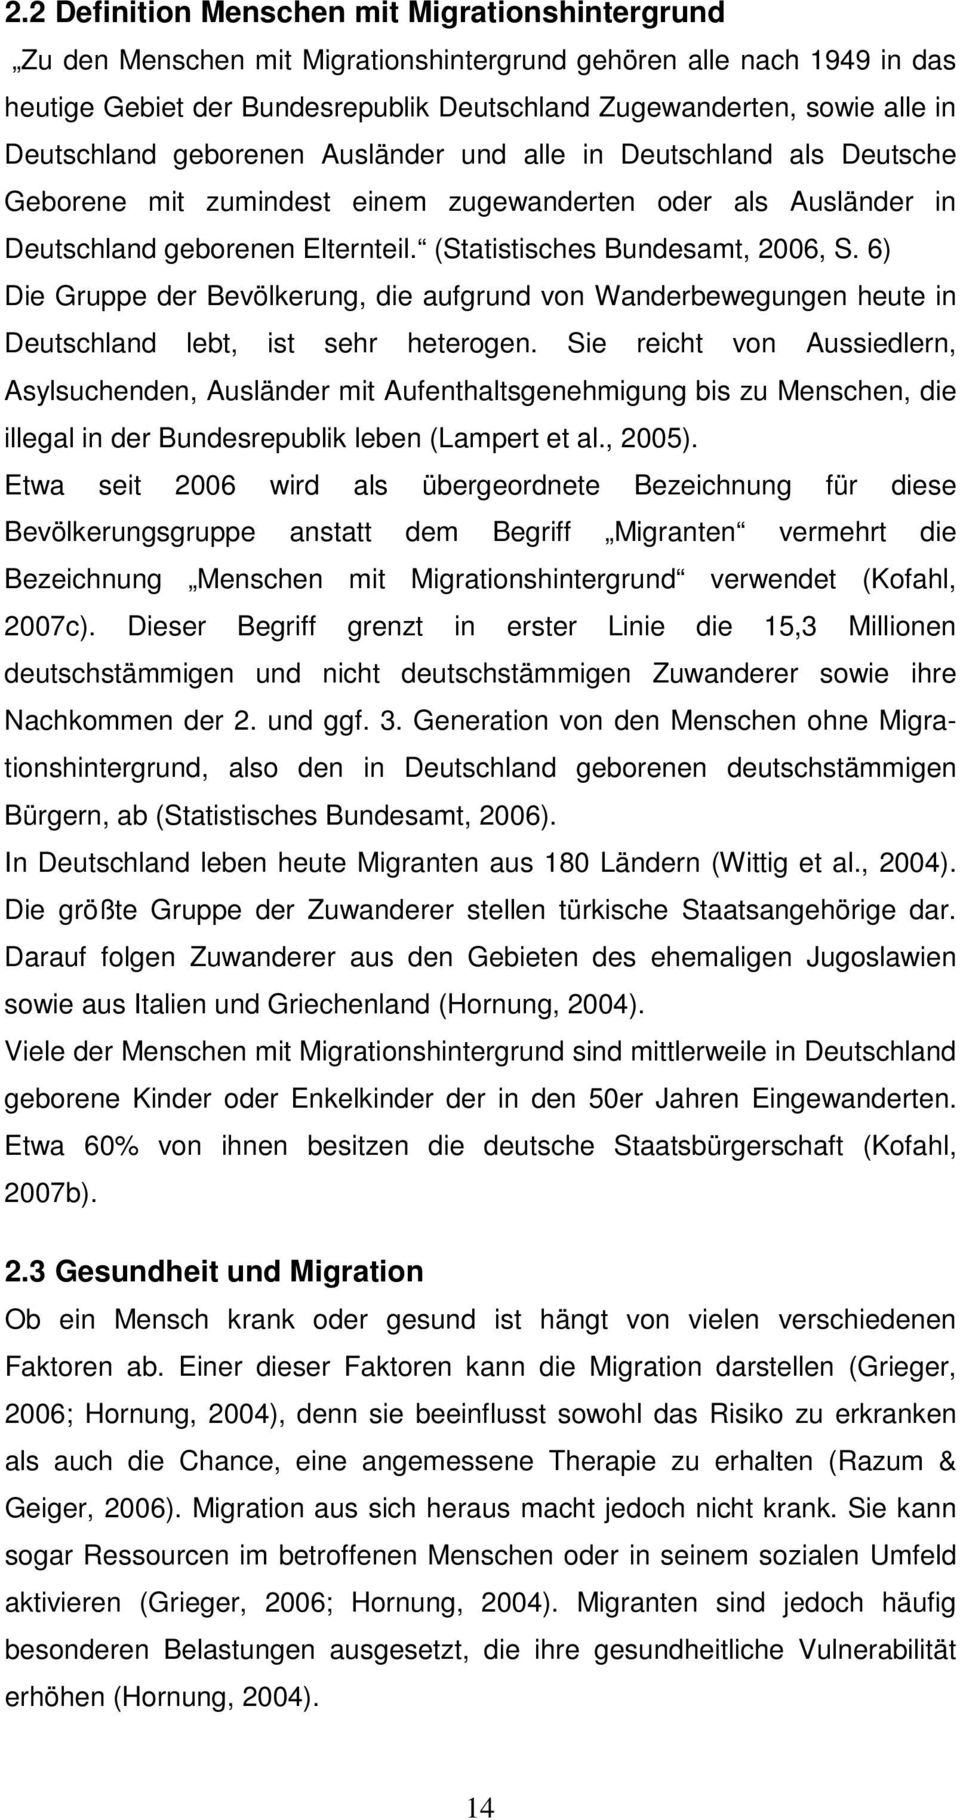 (Statistisches Bundesamt, 2006, S. 6) Die Gruppe der Bevölkerung, die aufgrund von Wanderbewegungen heute in Deutschland lebt, ist sehr heterogen.